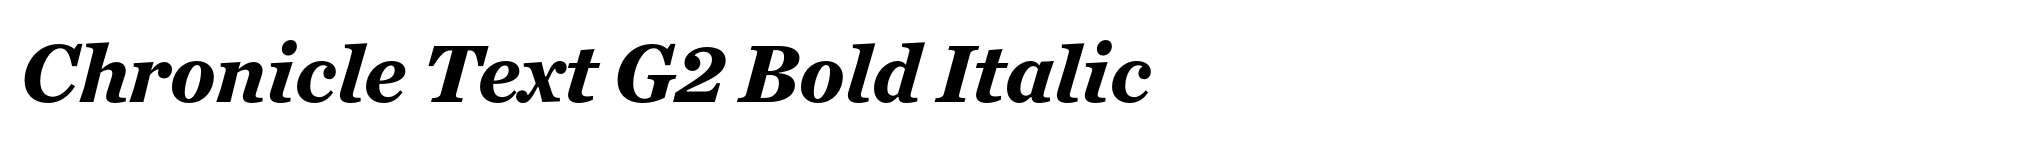 Chronicle Text G2 Bold Italic image